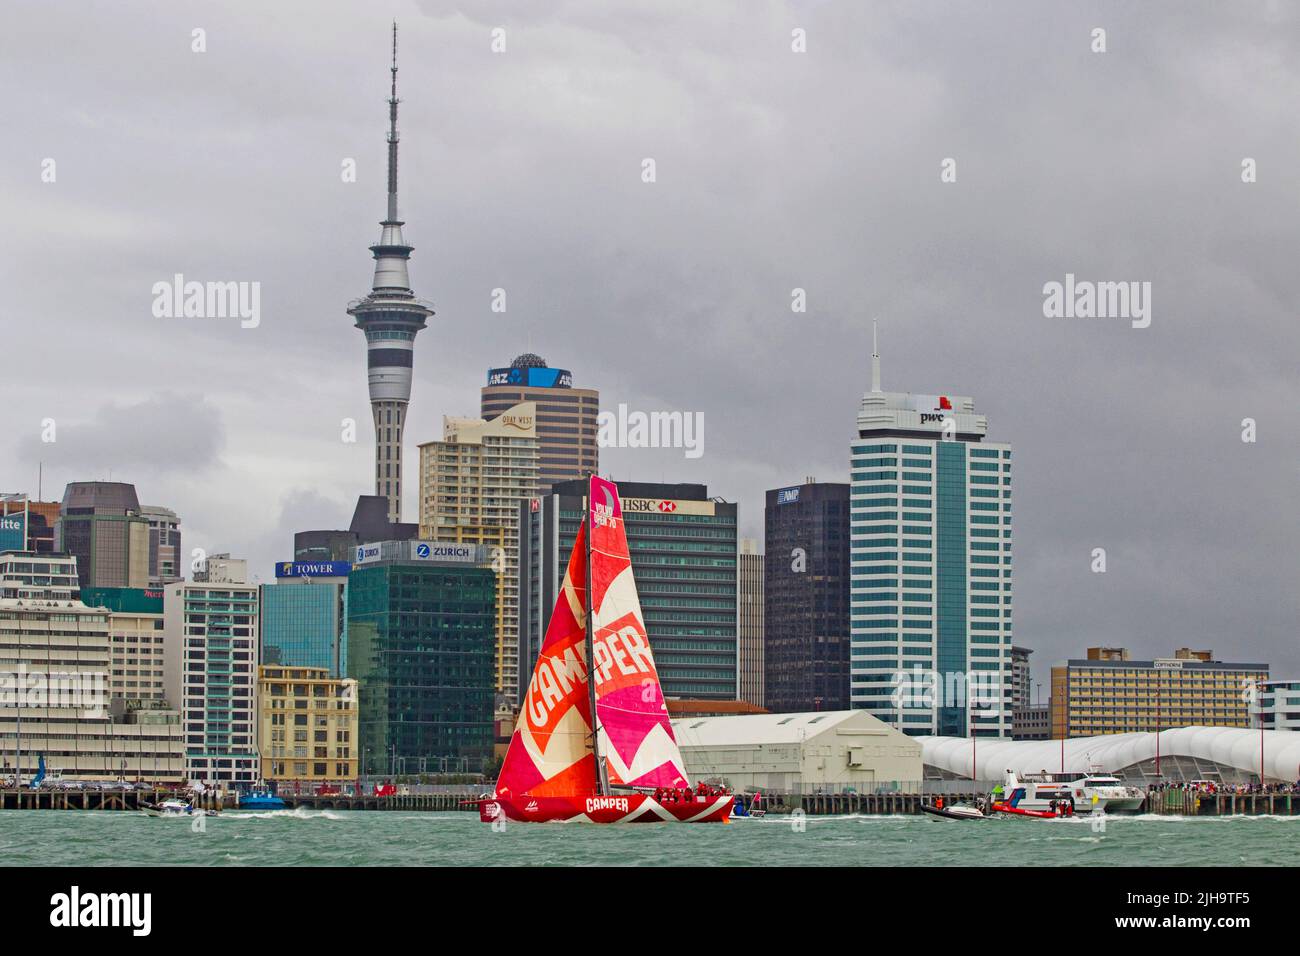 Camper con Emirates Team New Zealand parte del puerto para el tramo 5 a Itajai, Brasil como parte de la Volvo Ocean Race, Auckland, Nueva Zelanda, Sunday, M. Foto de stock